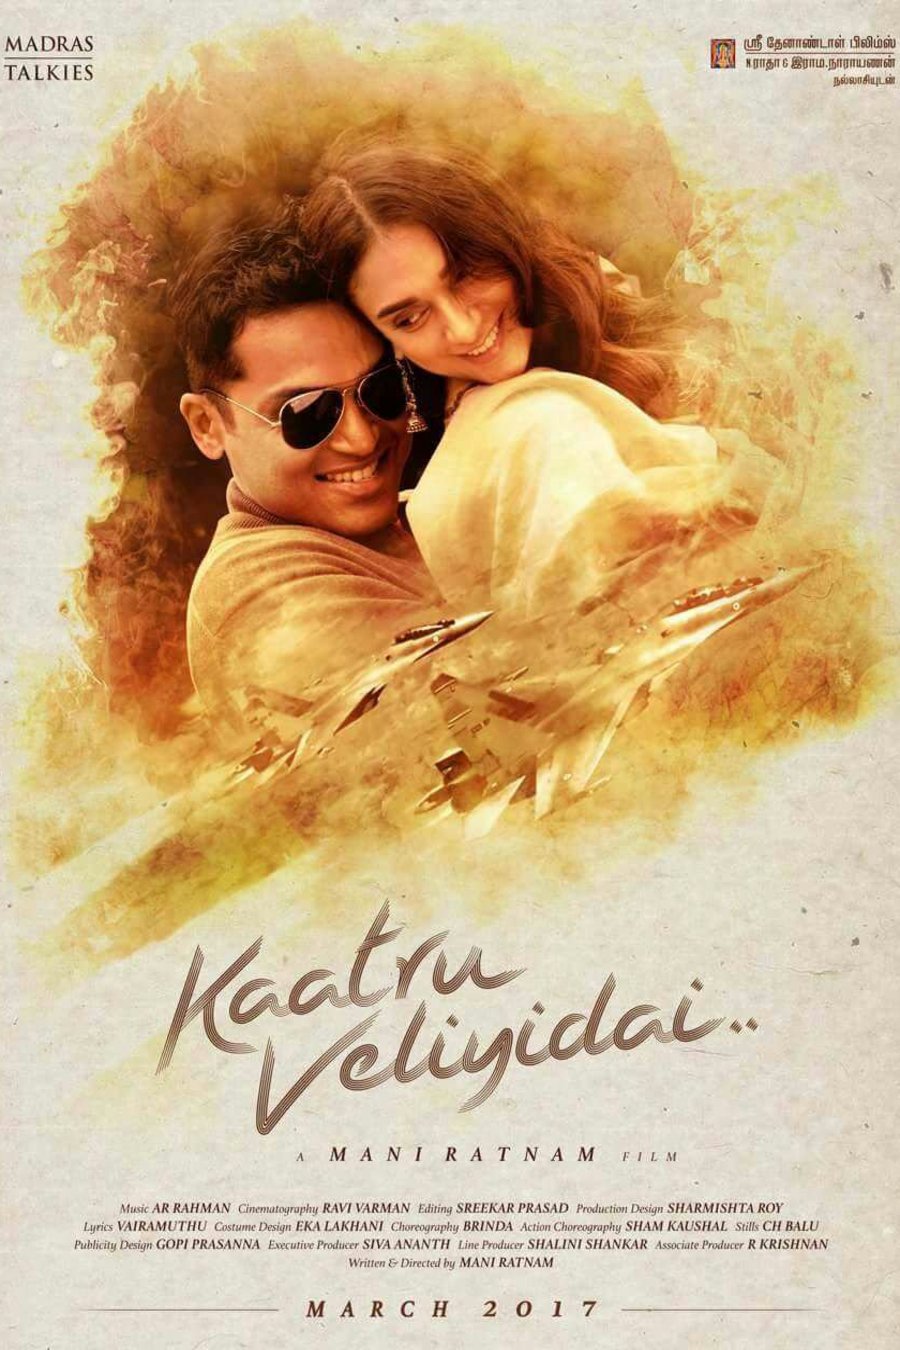 Tamil poster of the movie Kaatru Veliyidai